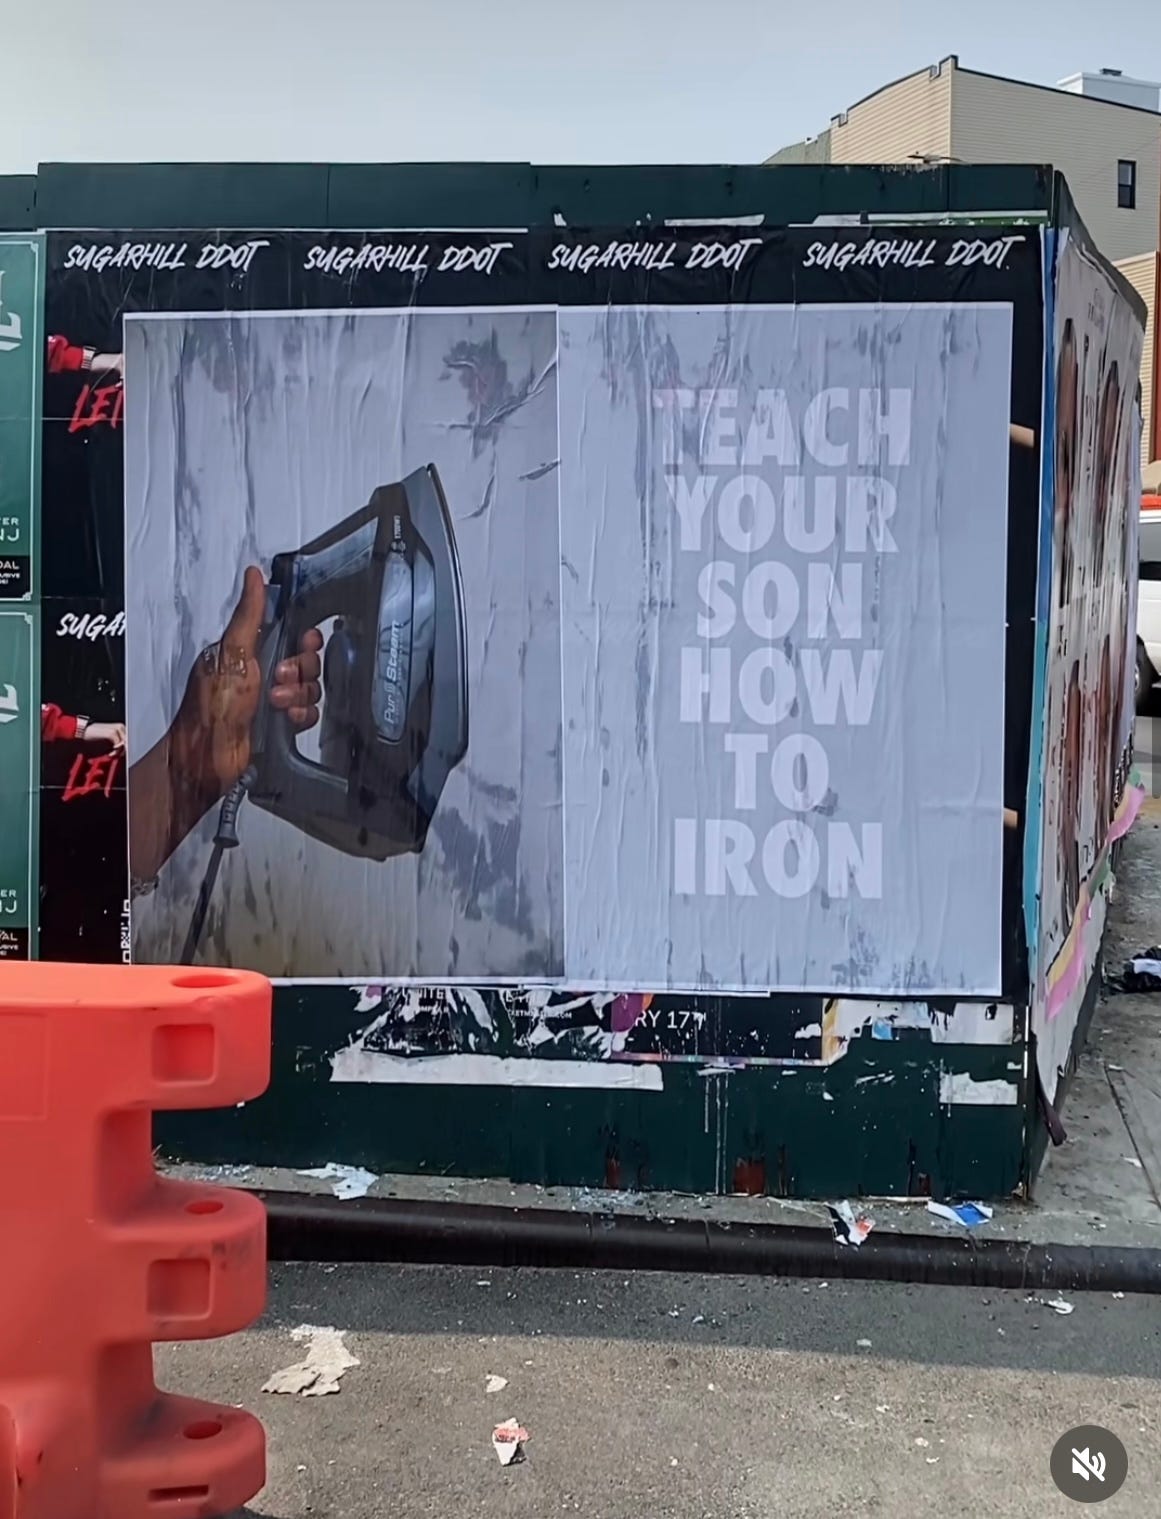 A sinistra una mano che regge un ferro da stiro" a destra "Teach your son how to iron